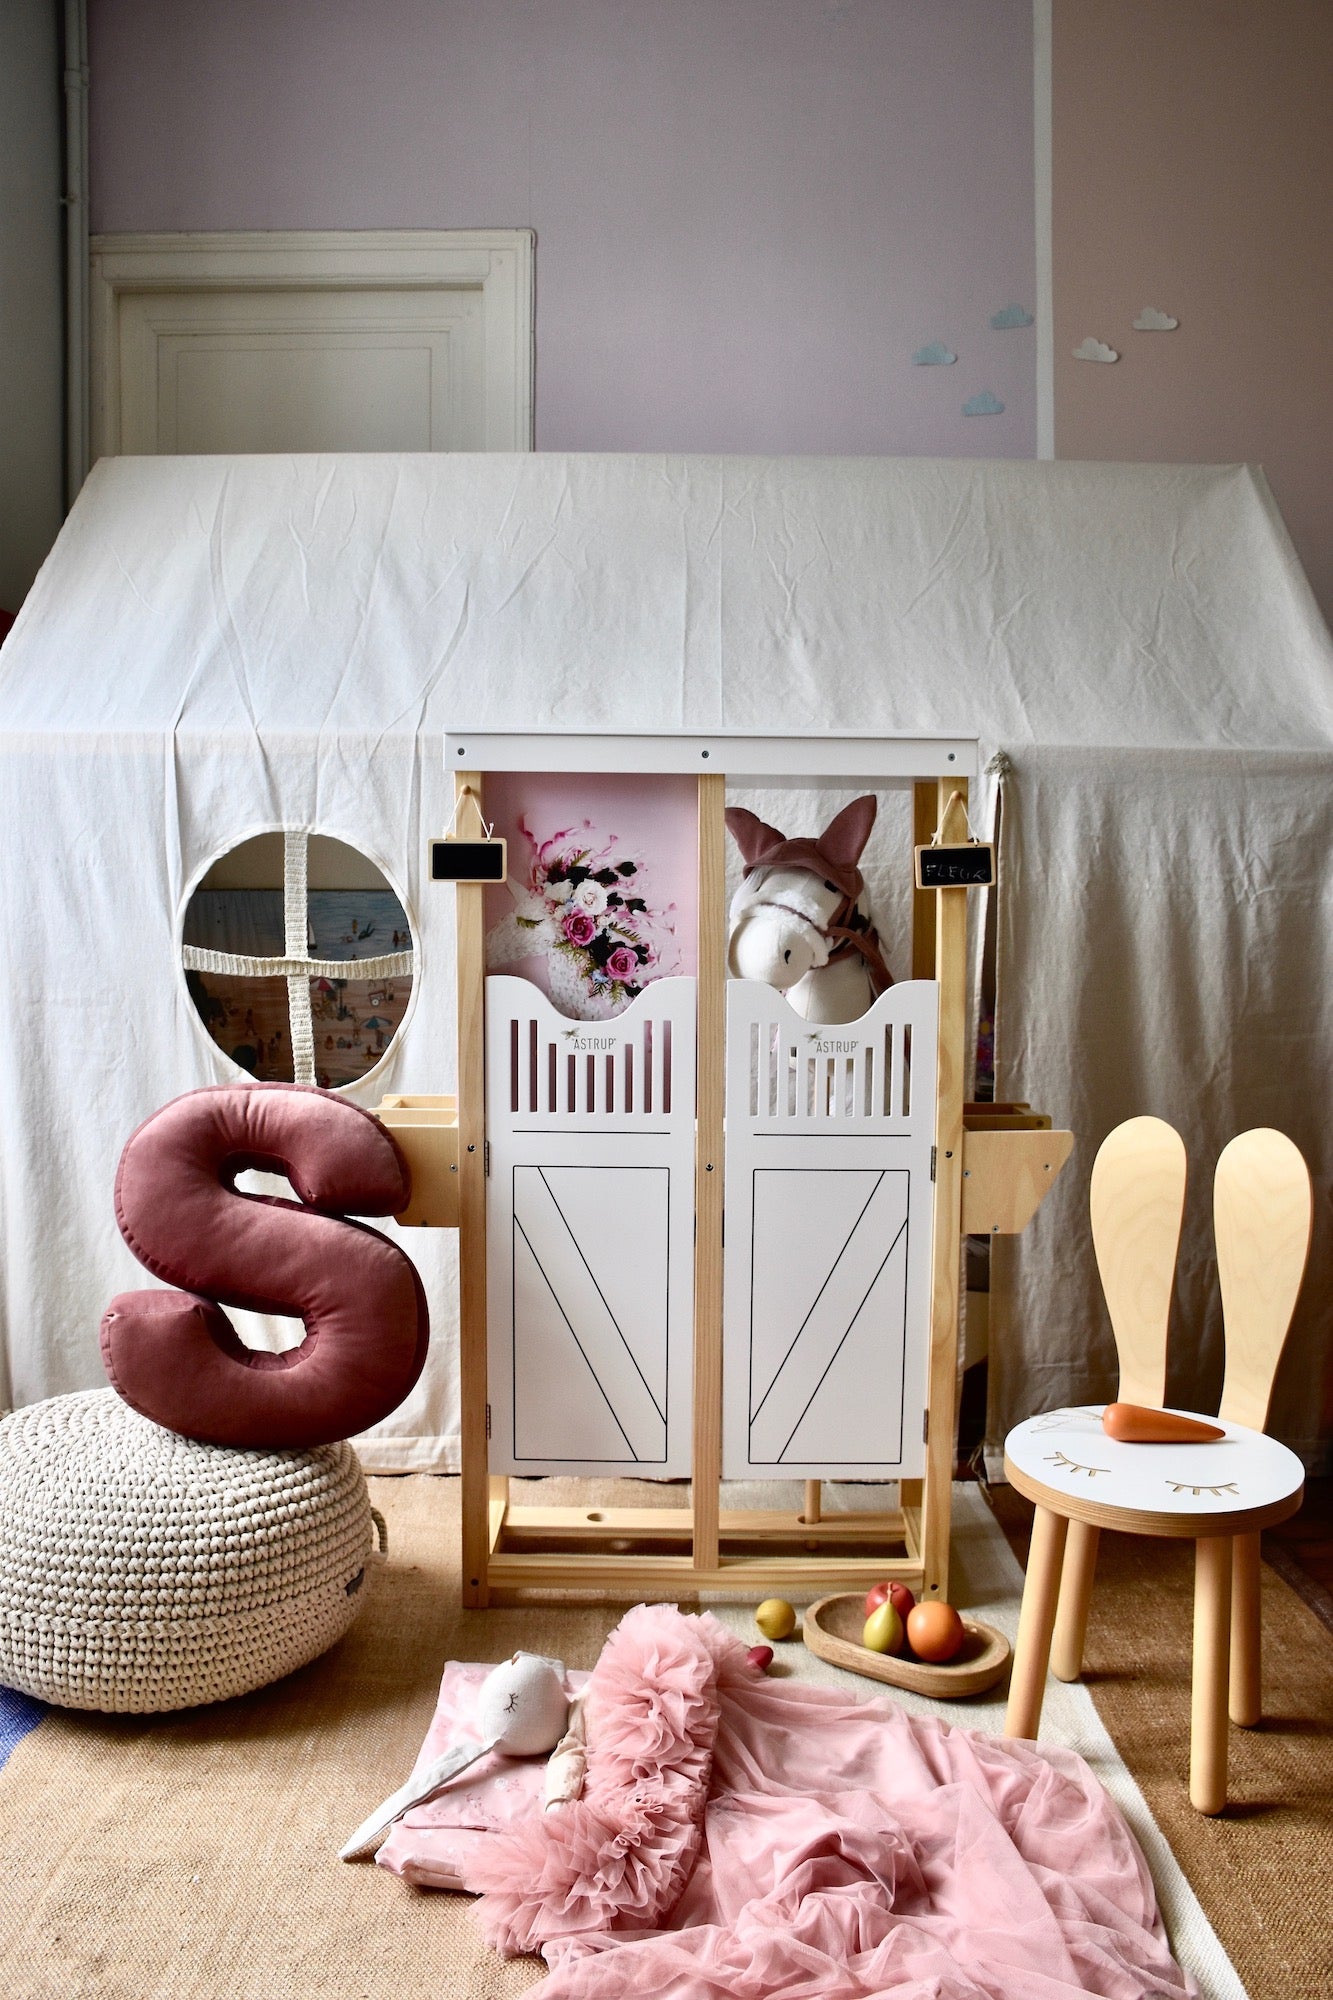 pokoik dziecięcy z namiotem i poduszką literką welurową S w kolorze różowym od Bettys Home